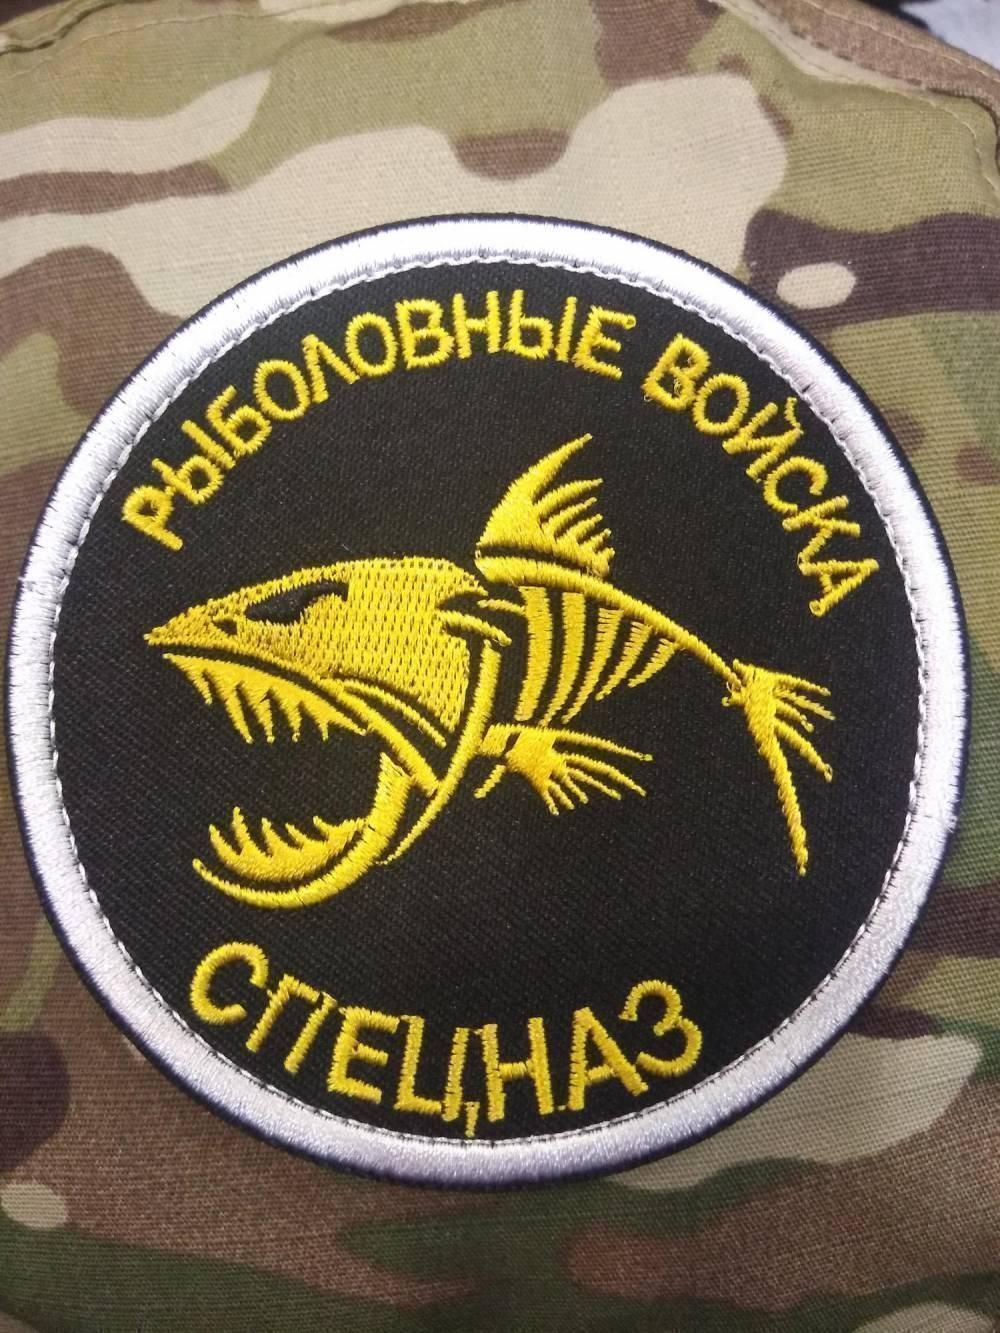 ПАТЧ "Рыболовные войска"